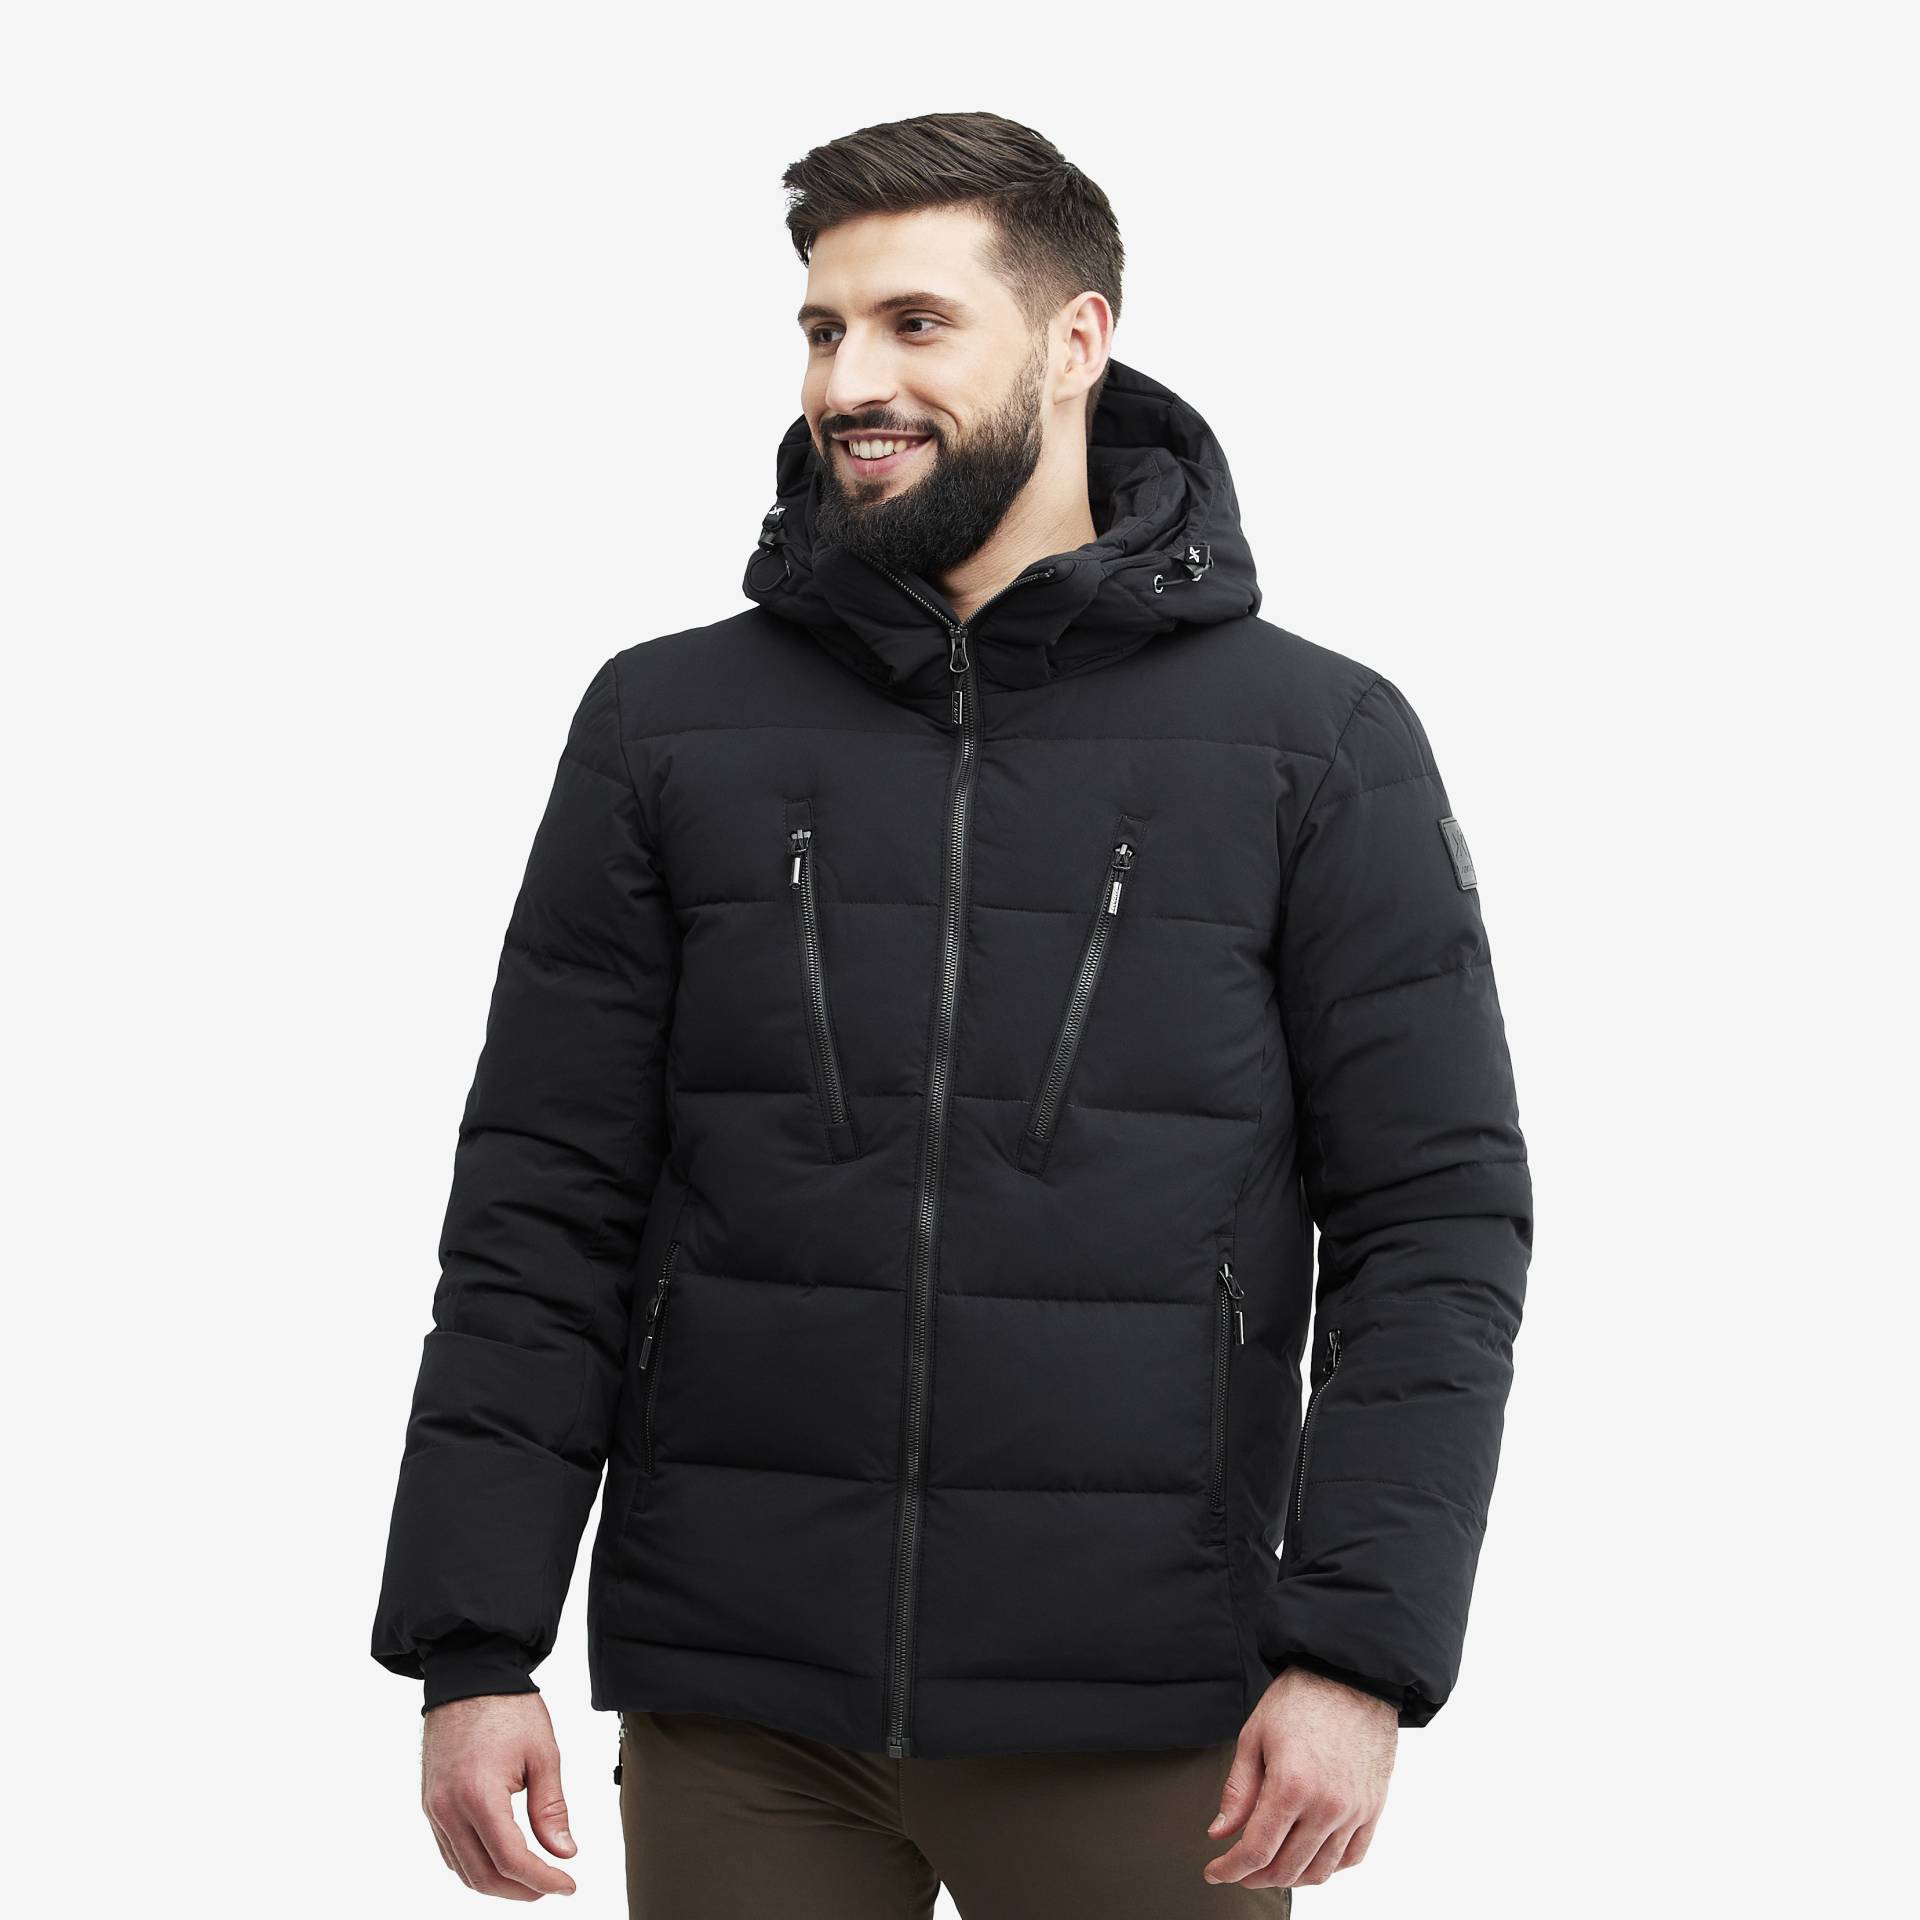 Igloo Jacket Herren Black, Größe:M - Skijacken von RevolutionRace